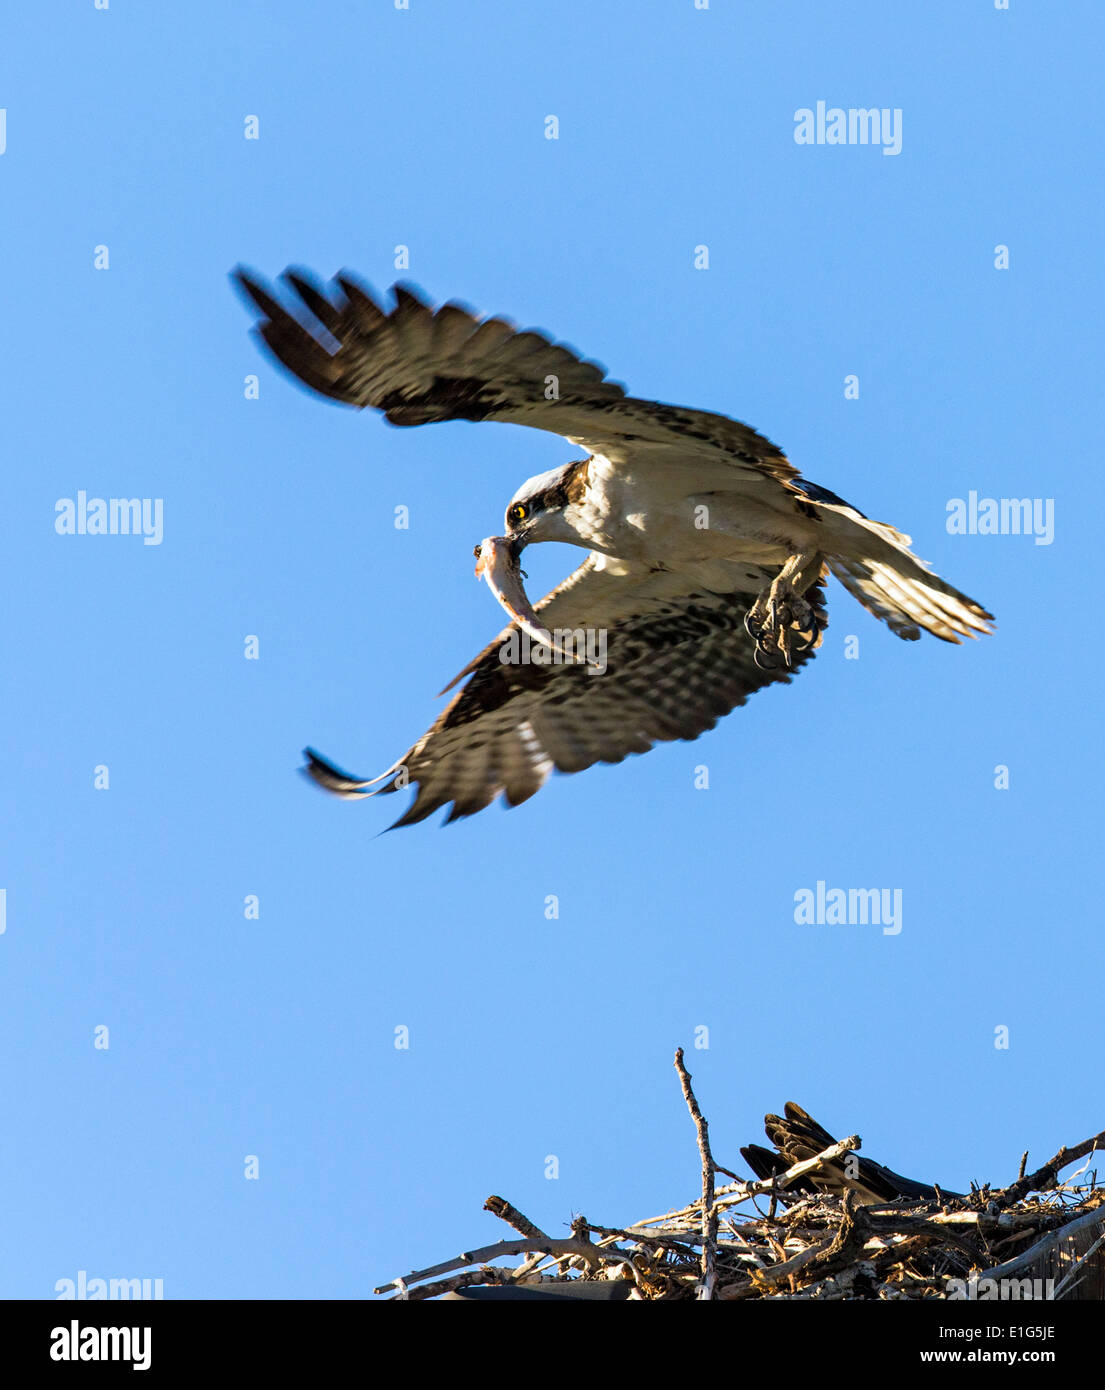 Osprey en vuelo llevando pescado fresco, Pandion haliaetus, mar, peces halcón, Río Eagle Hawk, peces halcón, raptor Foto de stock